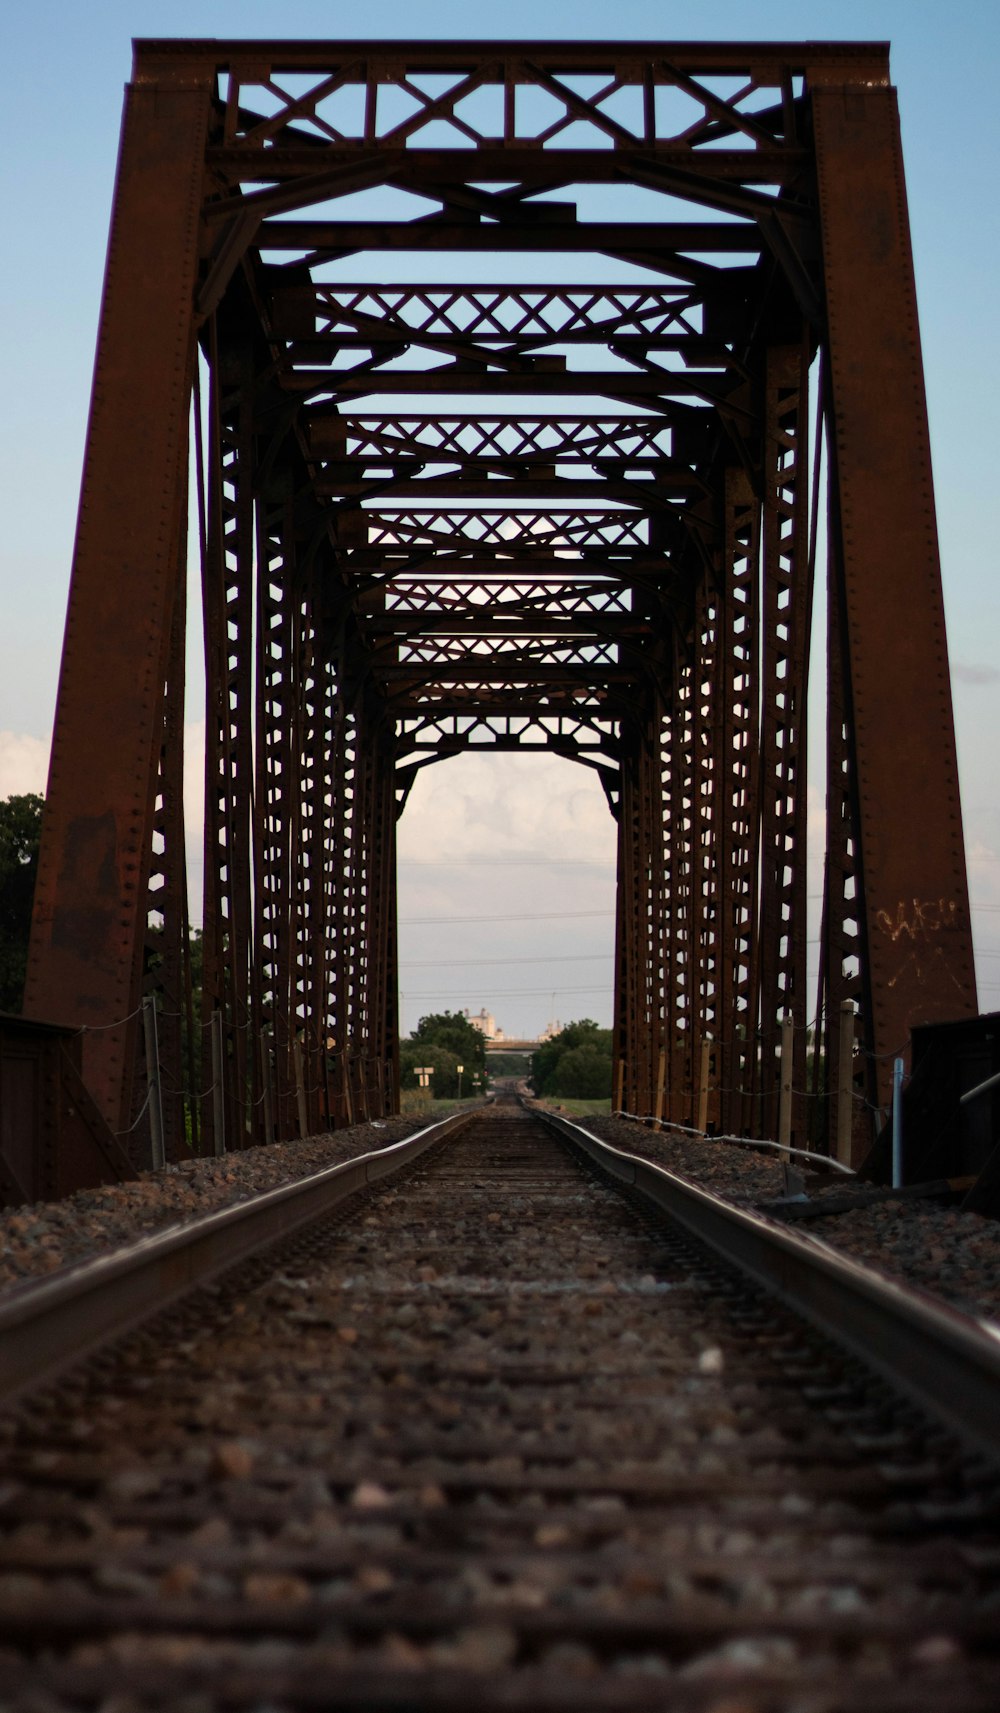 brown steel bridge